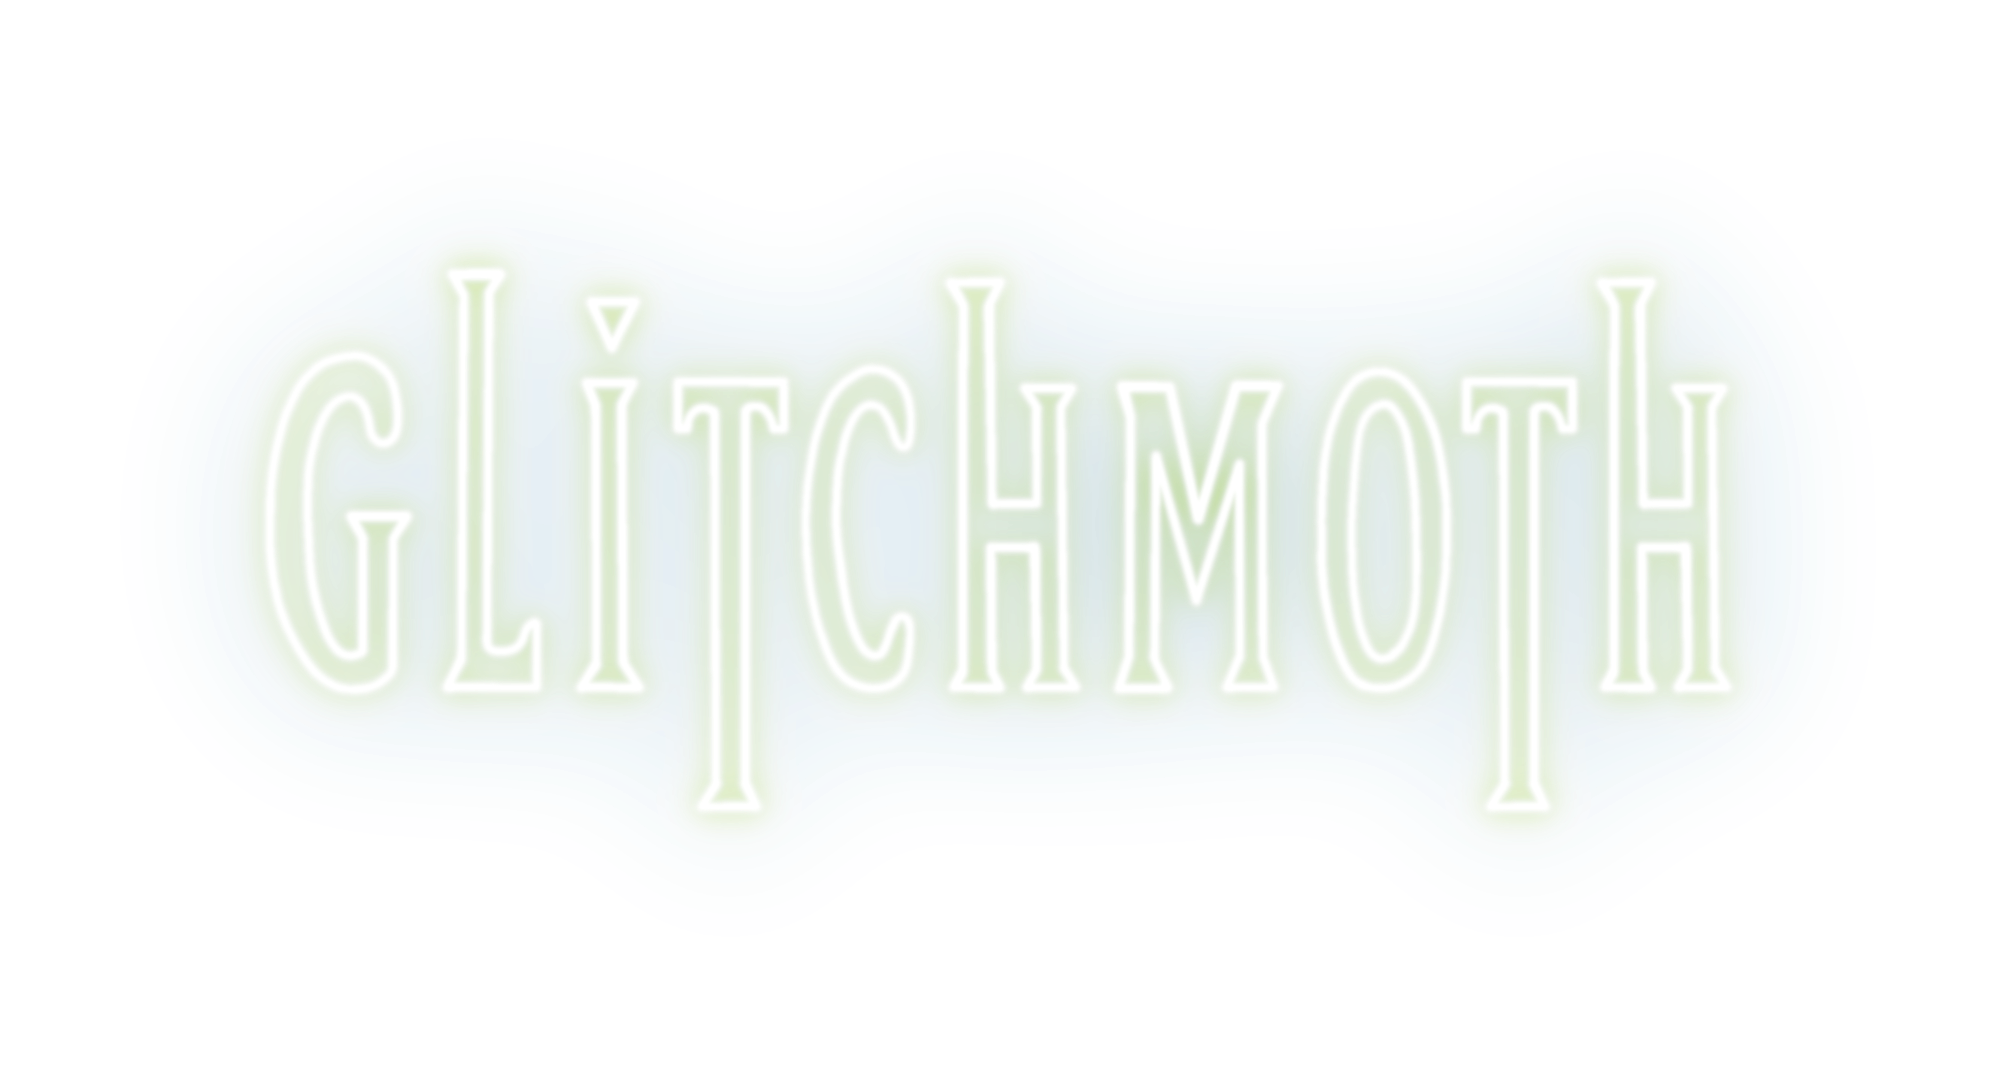 glitchmoth logo 2023